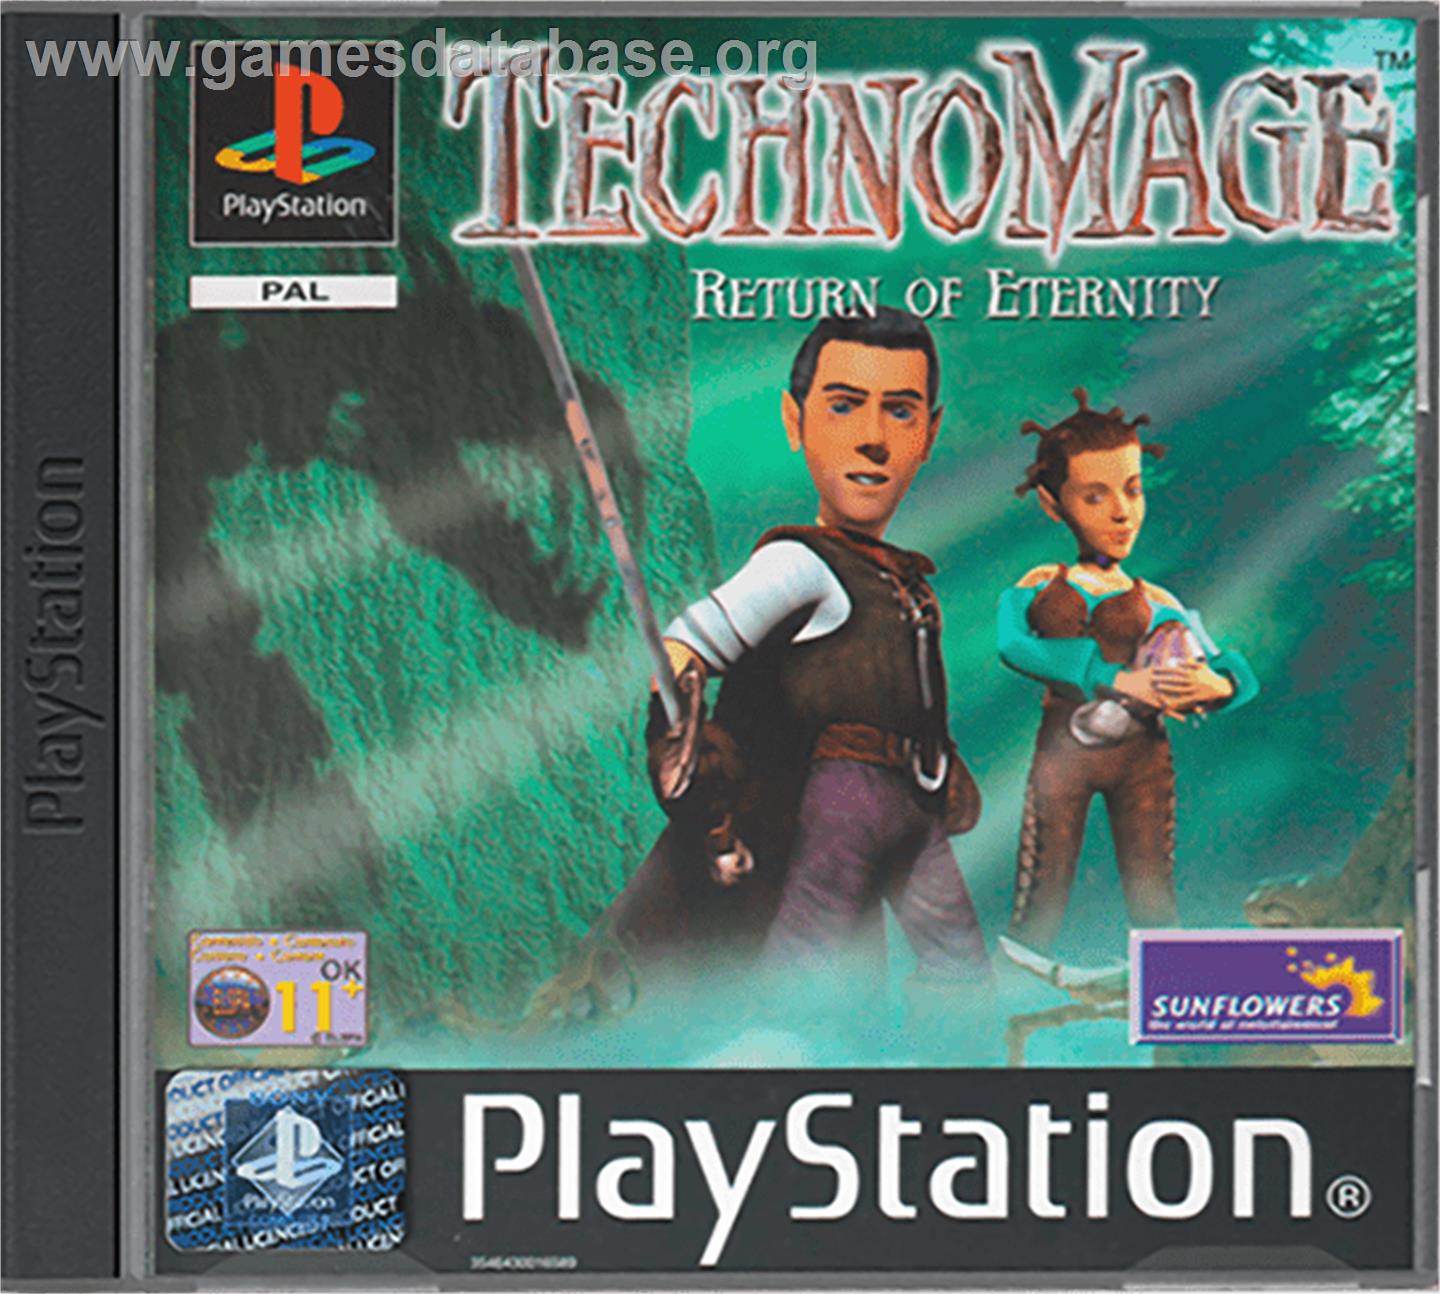 TechnoMage: Return of Eternity - Sony Playstation - Artwork - Box